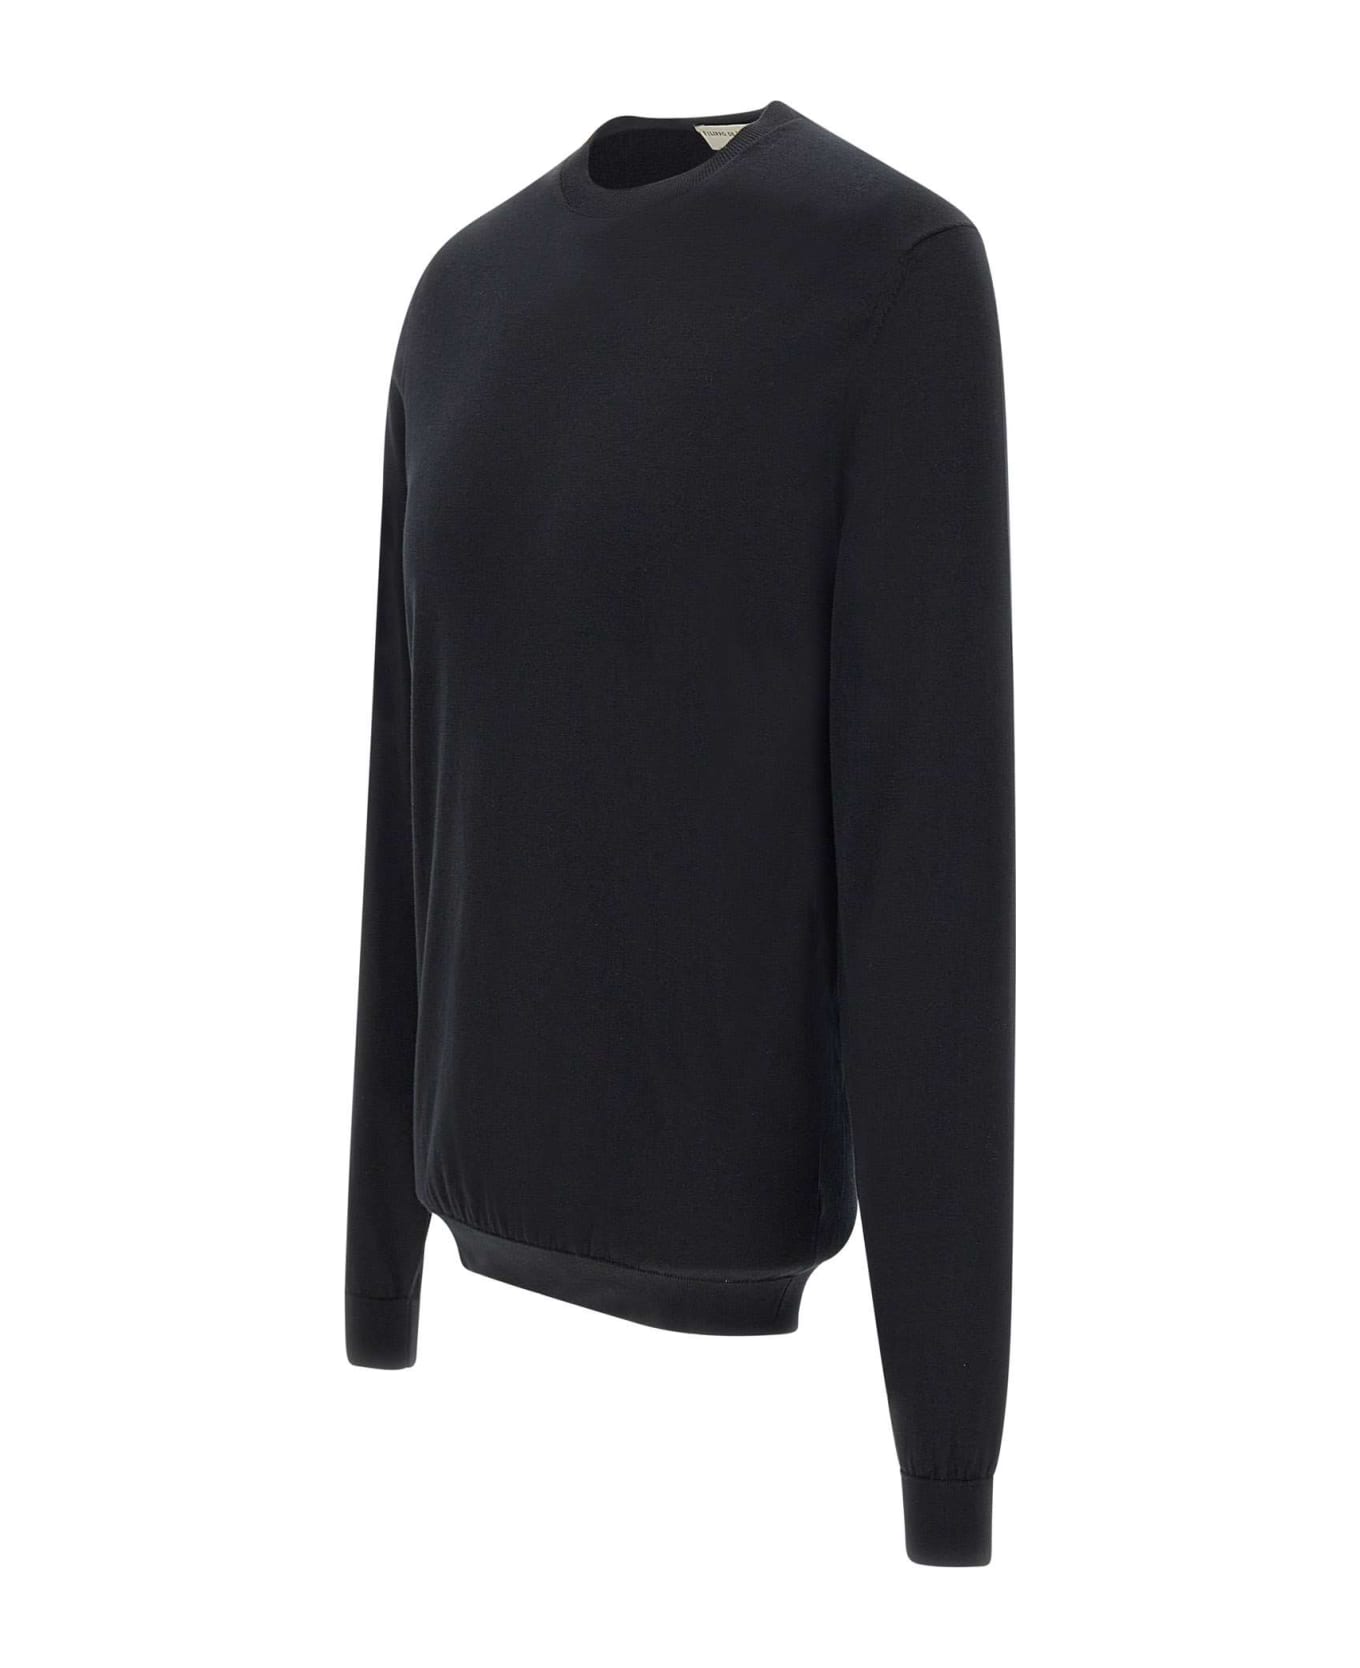 Filippo De Laurentiis Superlight Sweater Cotton - BLACK ニットウェア